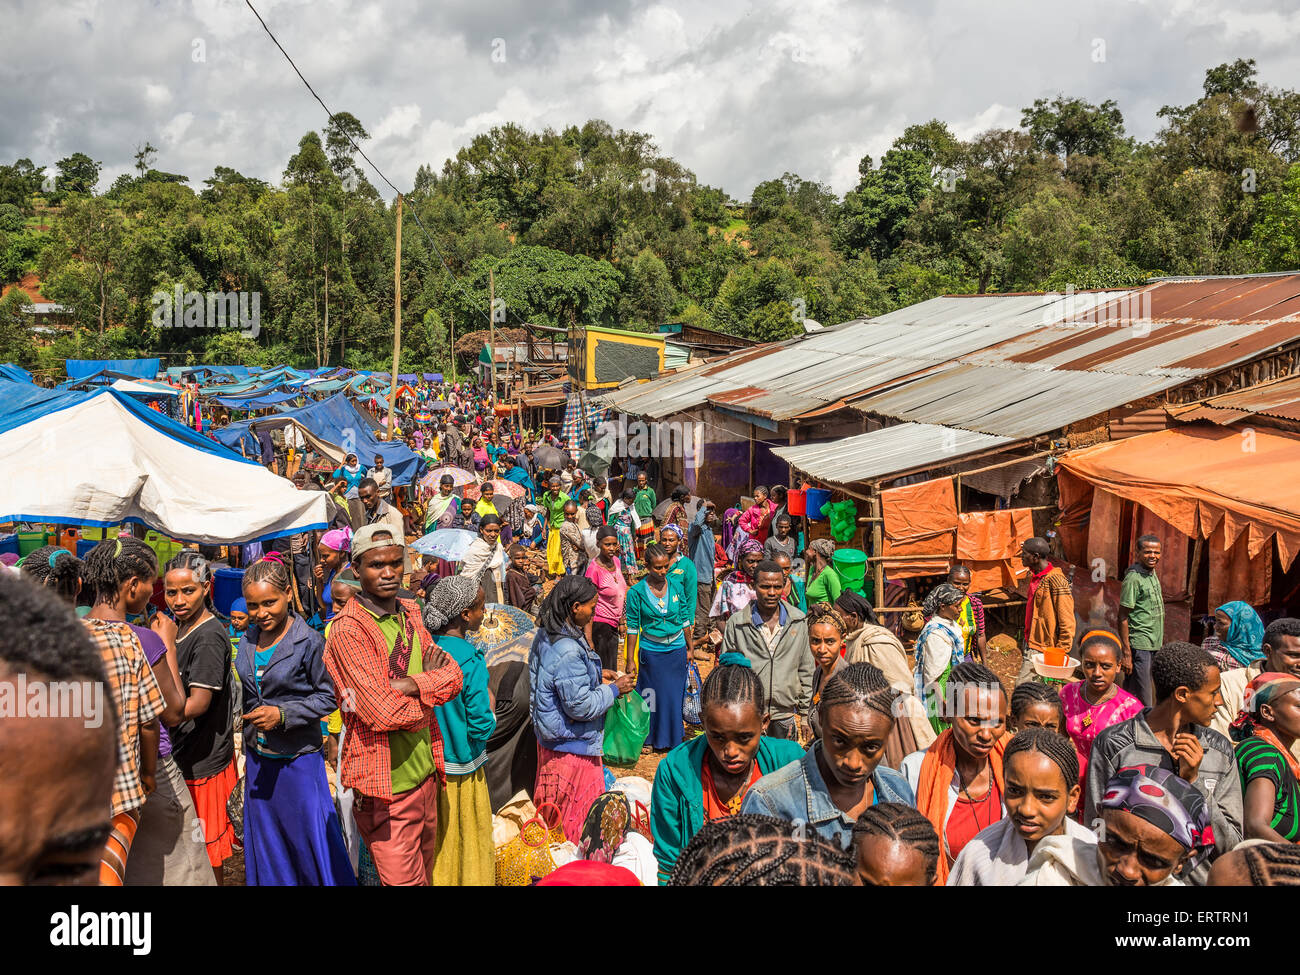 Populaires et encombré de marché de l'Afrique, l'Éthiopie Jimma avec beaucoup de gens l'achat et la vente. Banque D'Images